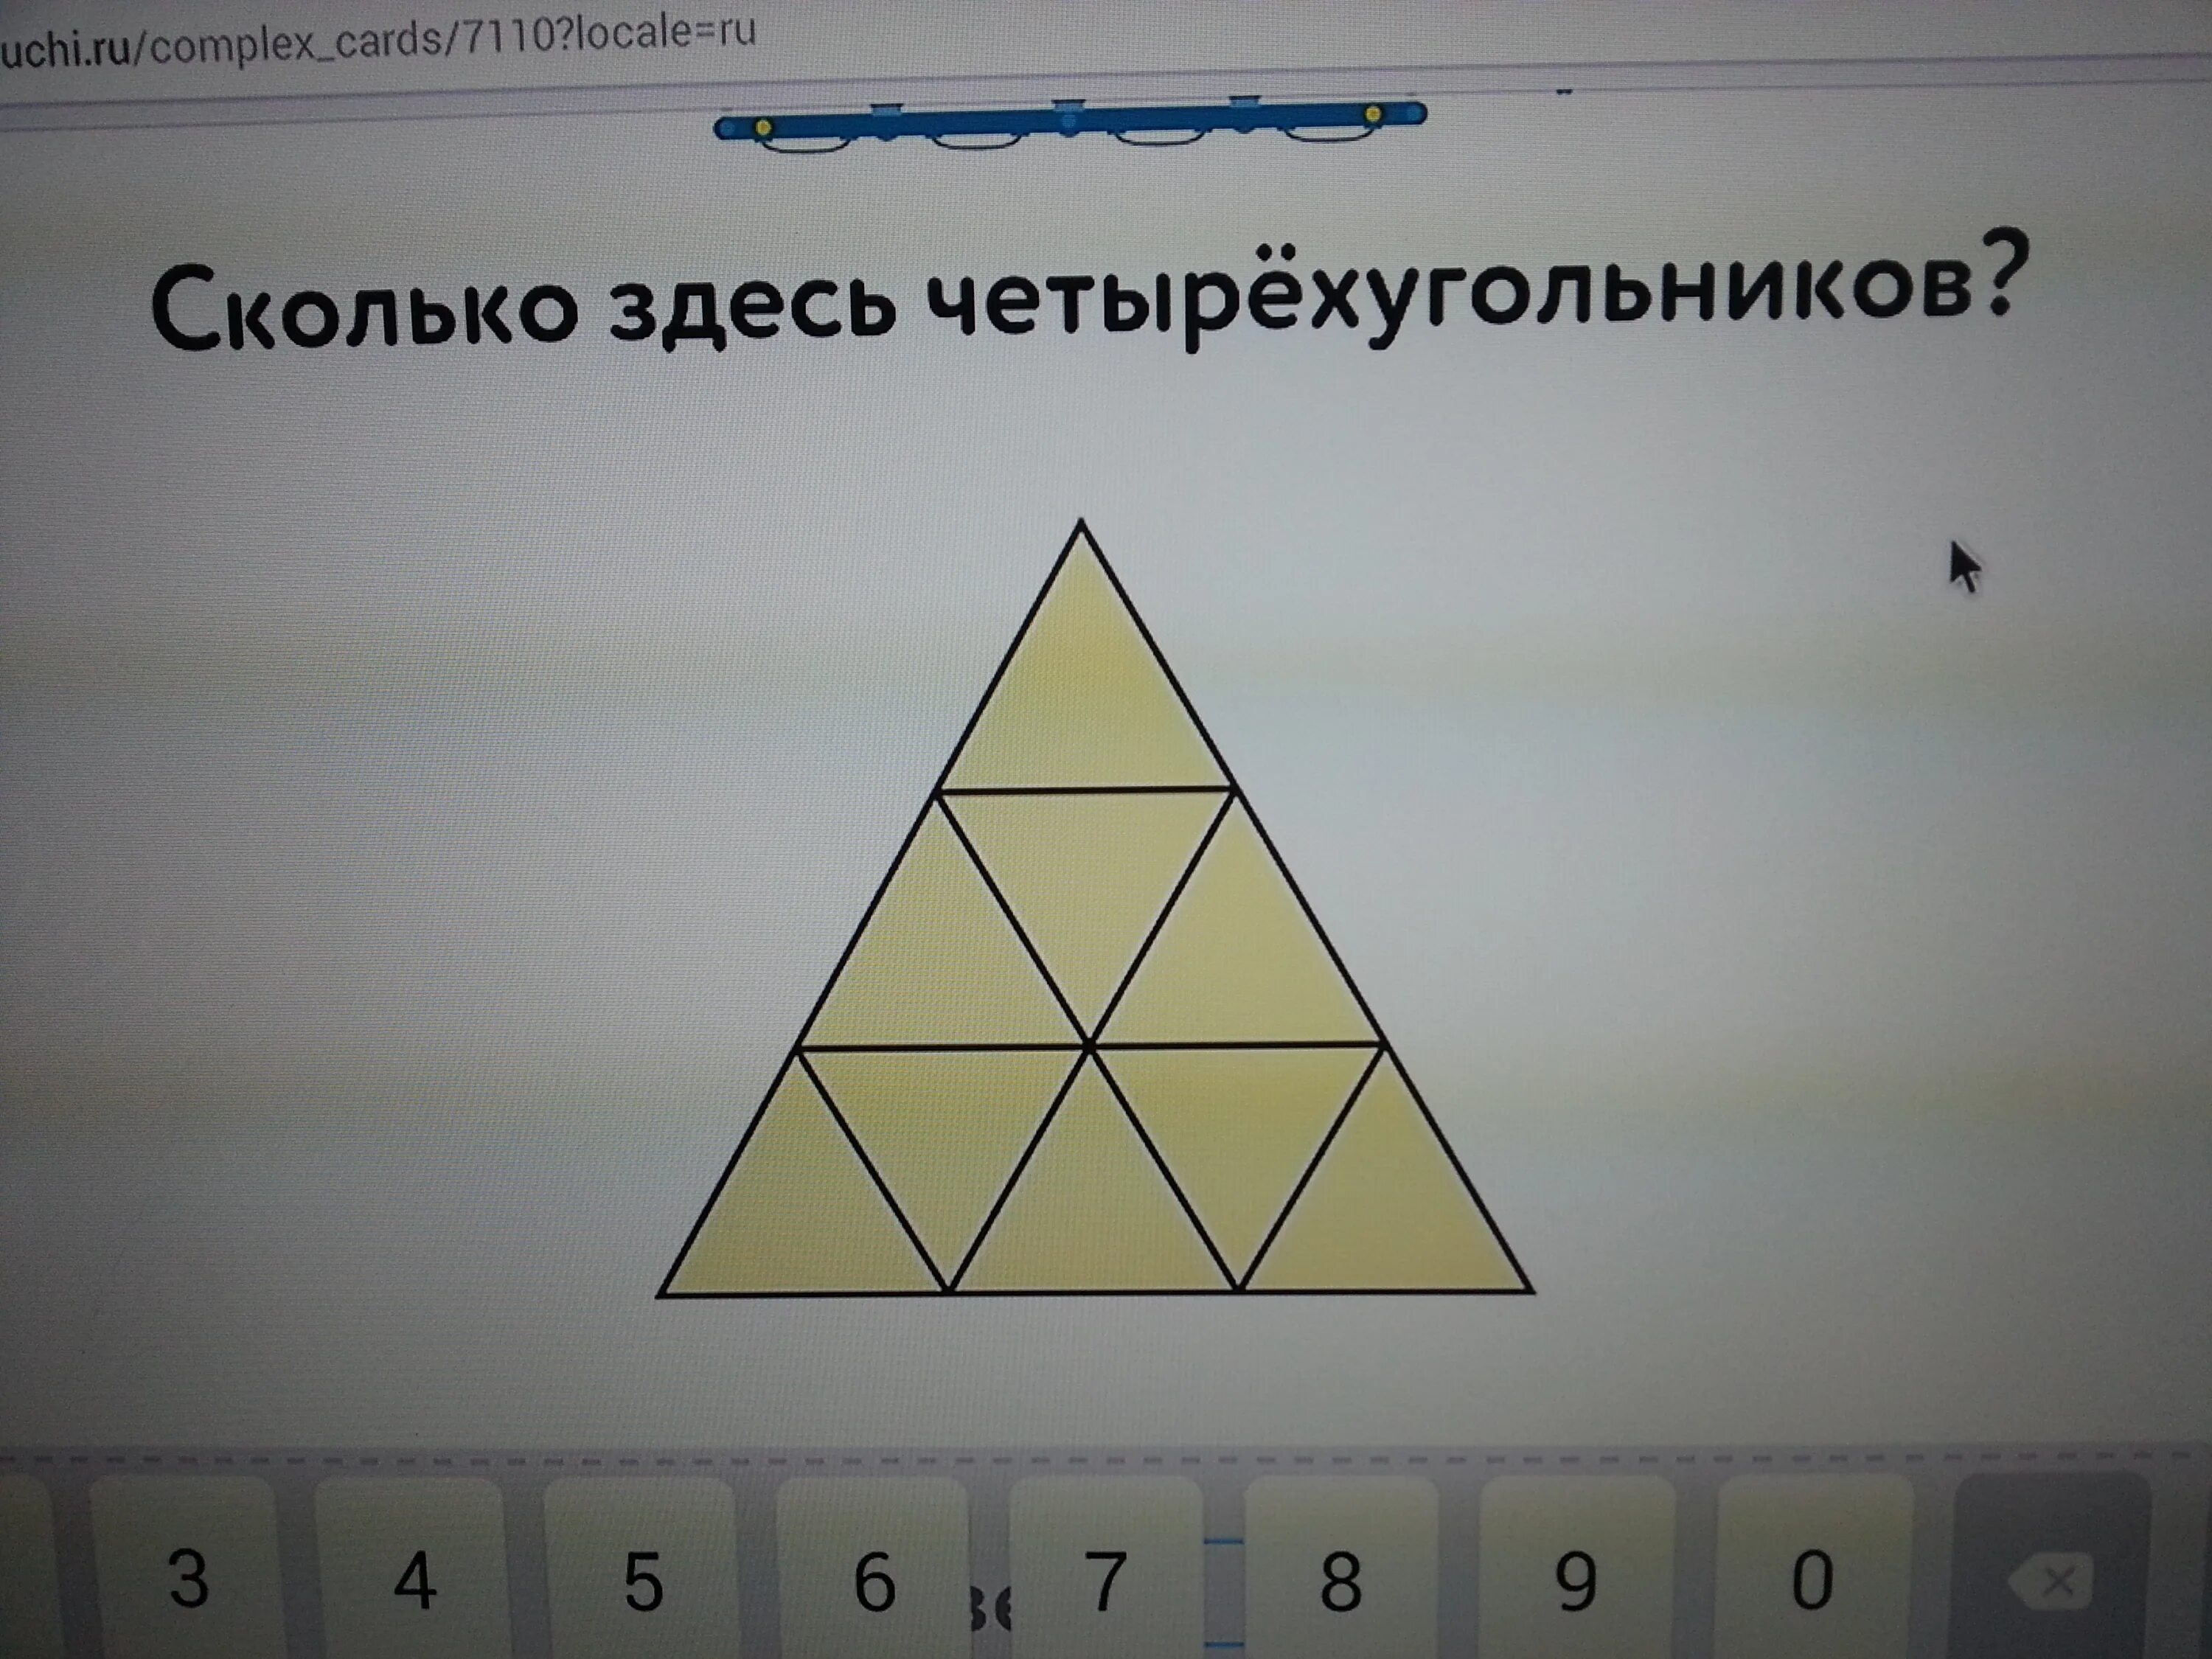 Из 9 треугольников 1. Сколько здесь четырехугольников. Сколько сдечь четырёхугольников. Сколько треугольников и четырехугольников. Сколько треугольников и четырехугольников можно найти на чертеже.